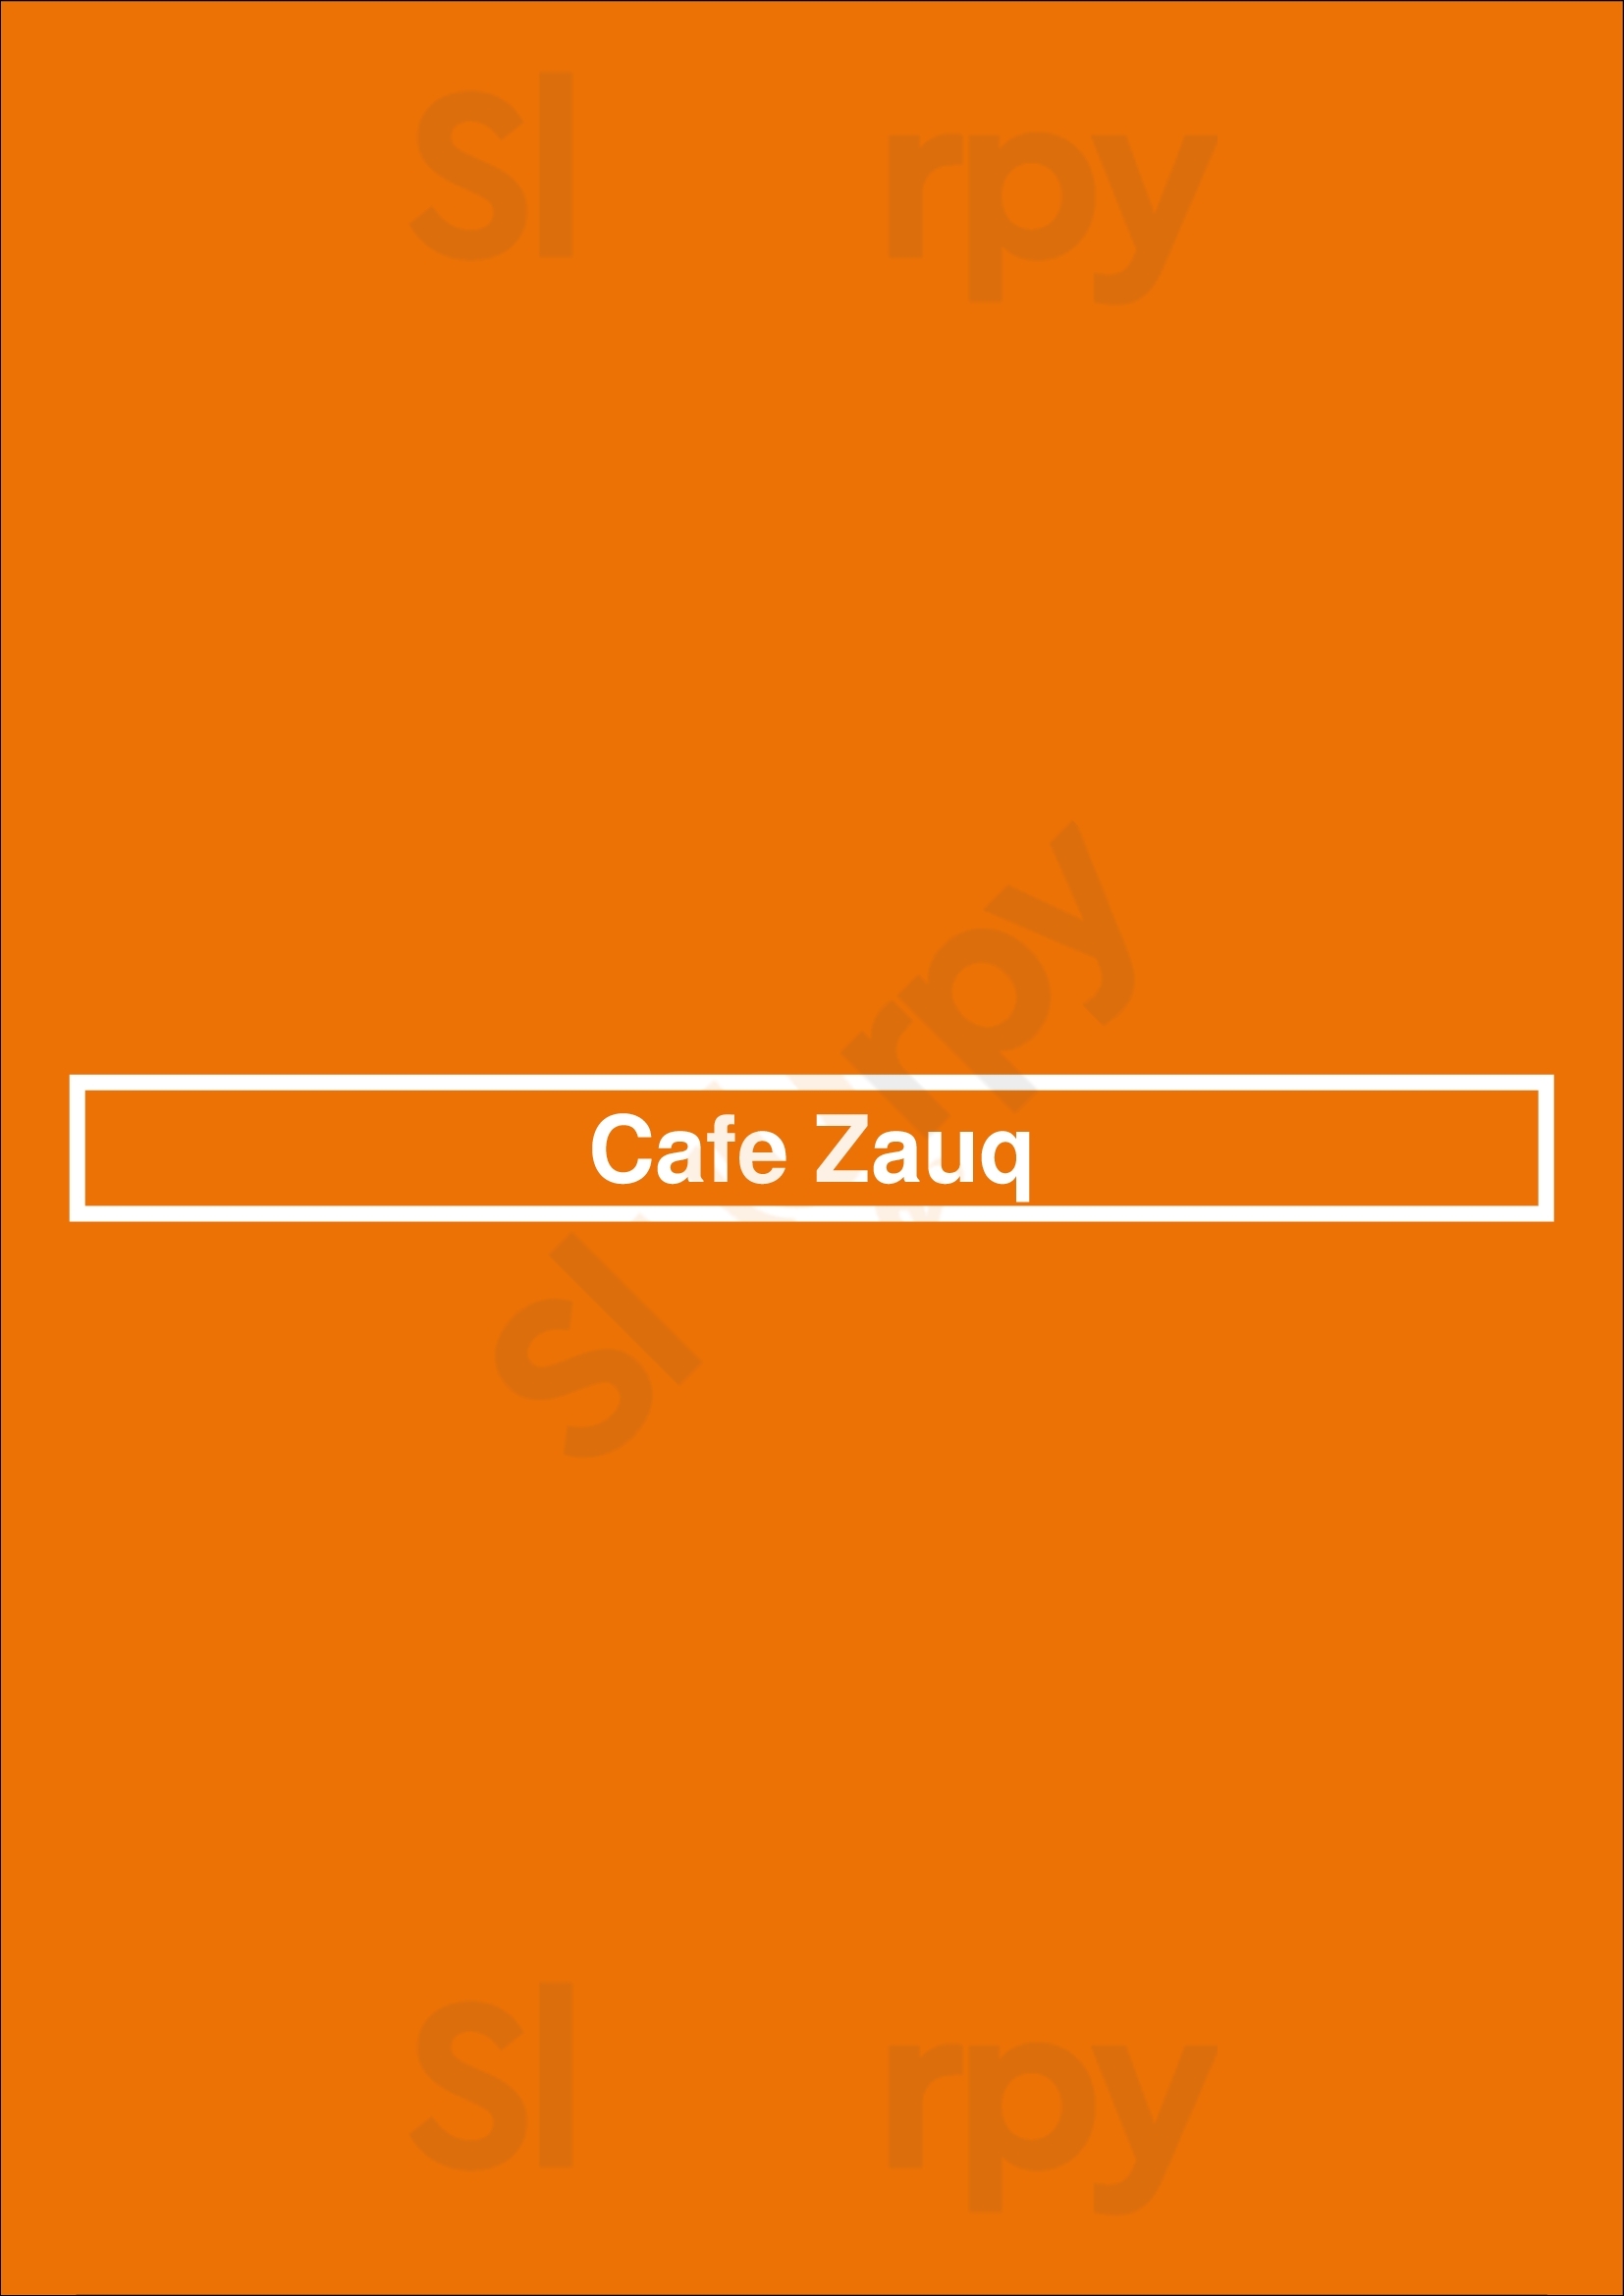 Cafe Zauq Milton Menu - 1